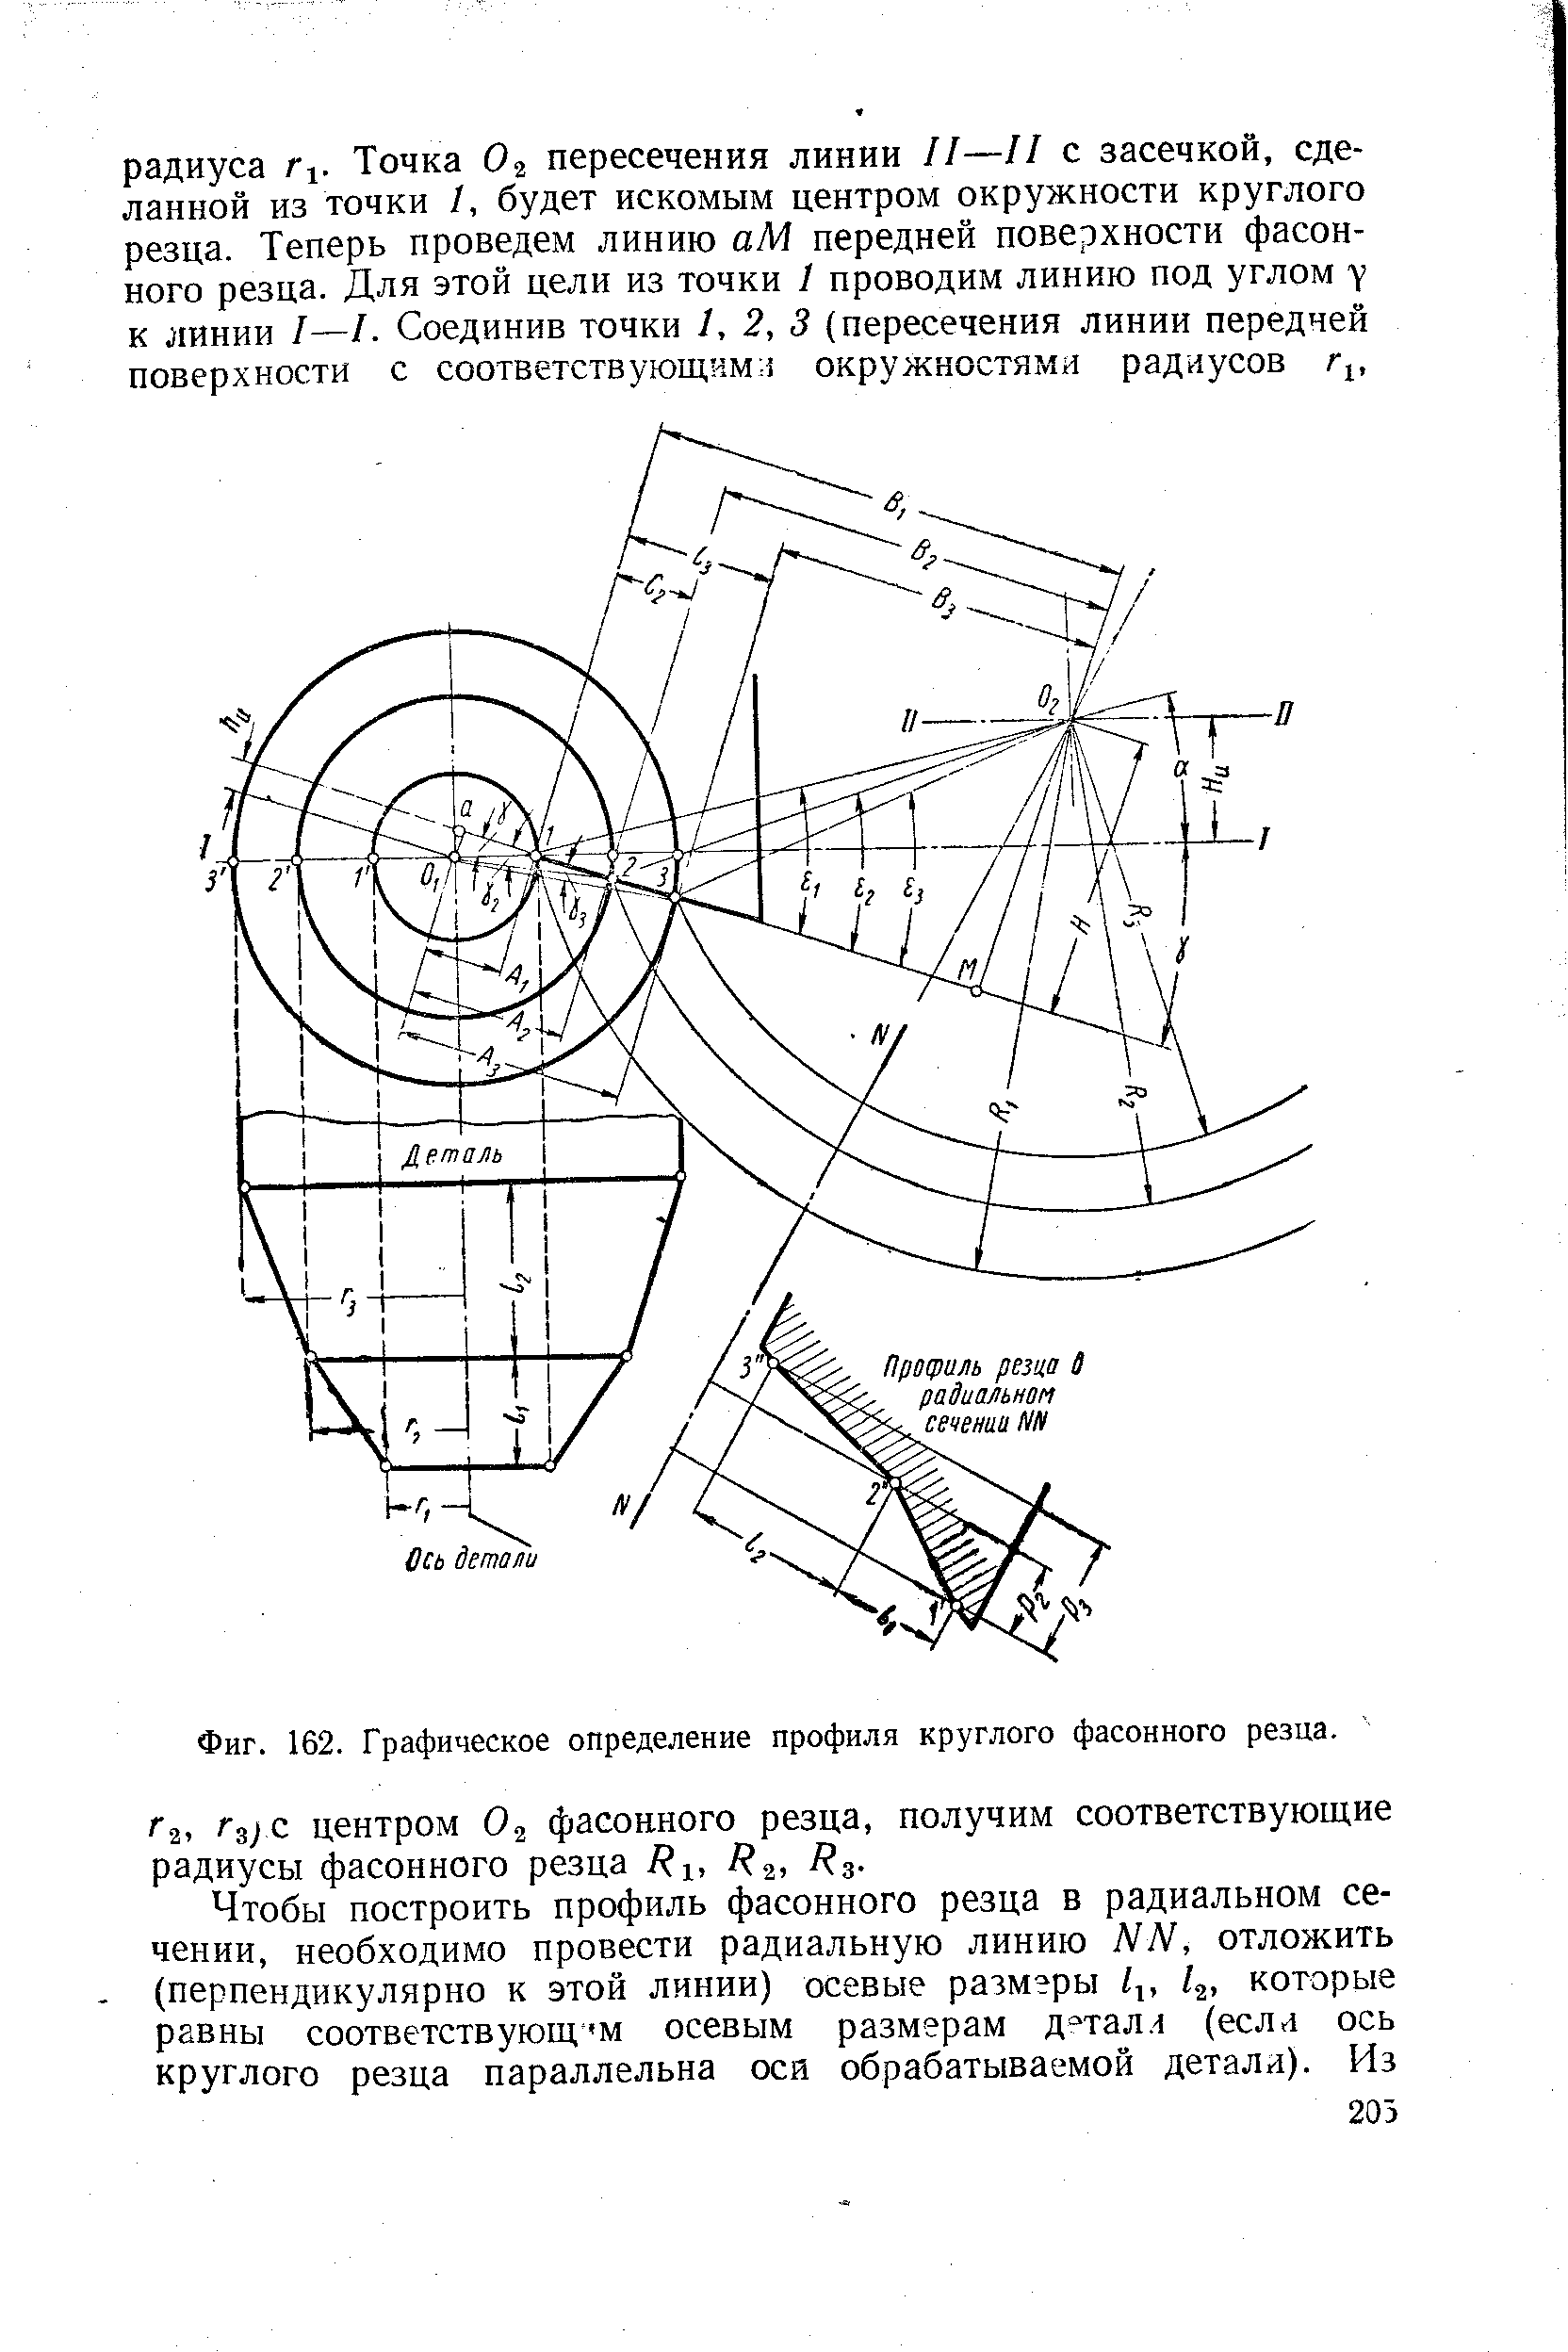 Фиг. 162. Графическое определение профиля круглого фасонного резца.
